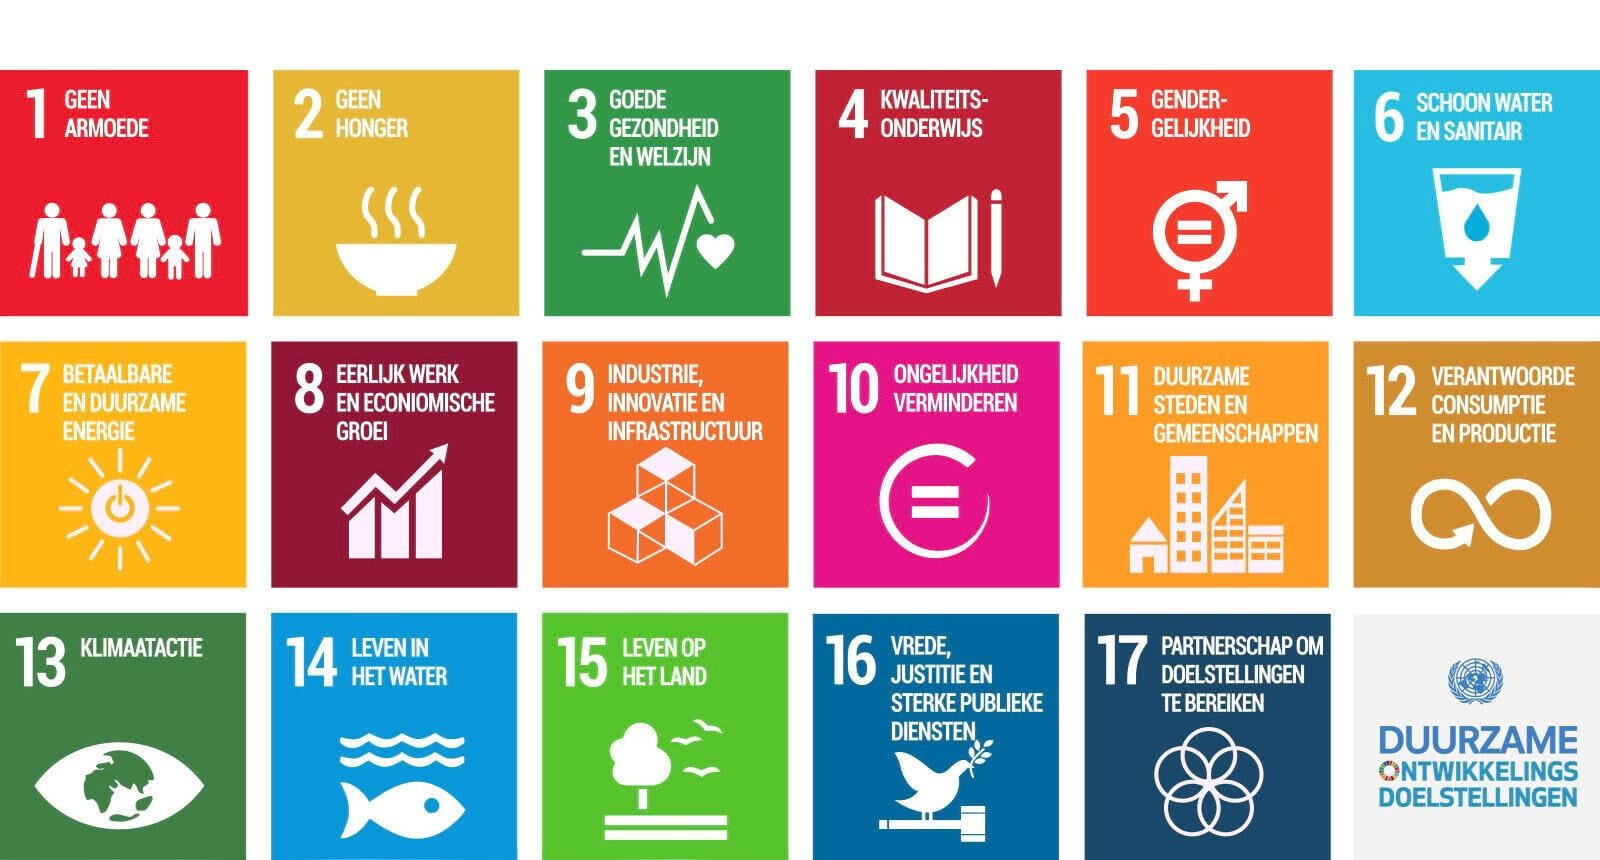 Sustainable Development Goals of Duurzame ontwikkelingsdoelen<br>